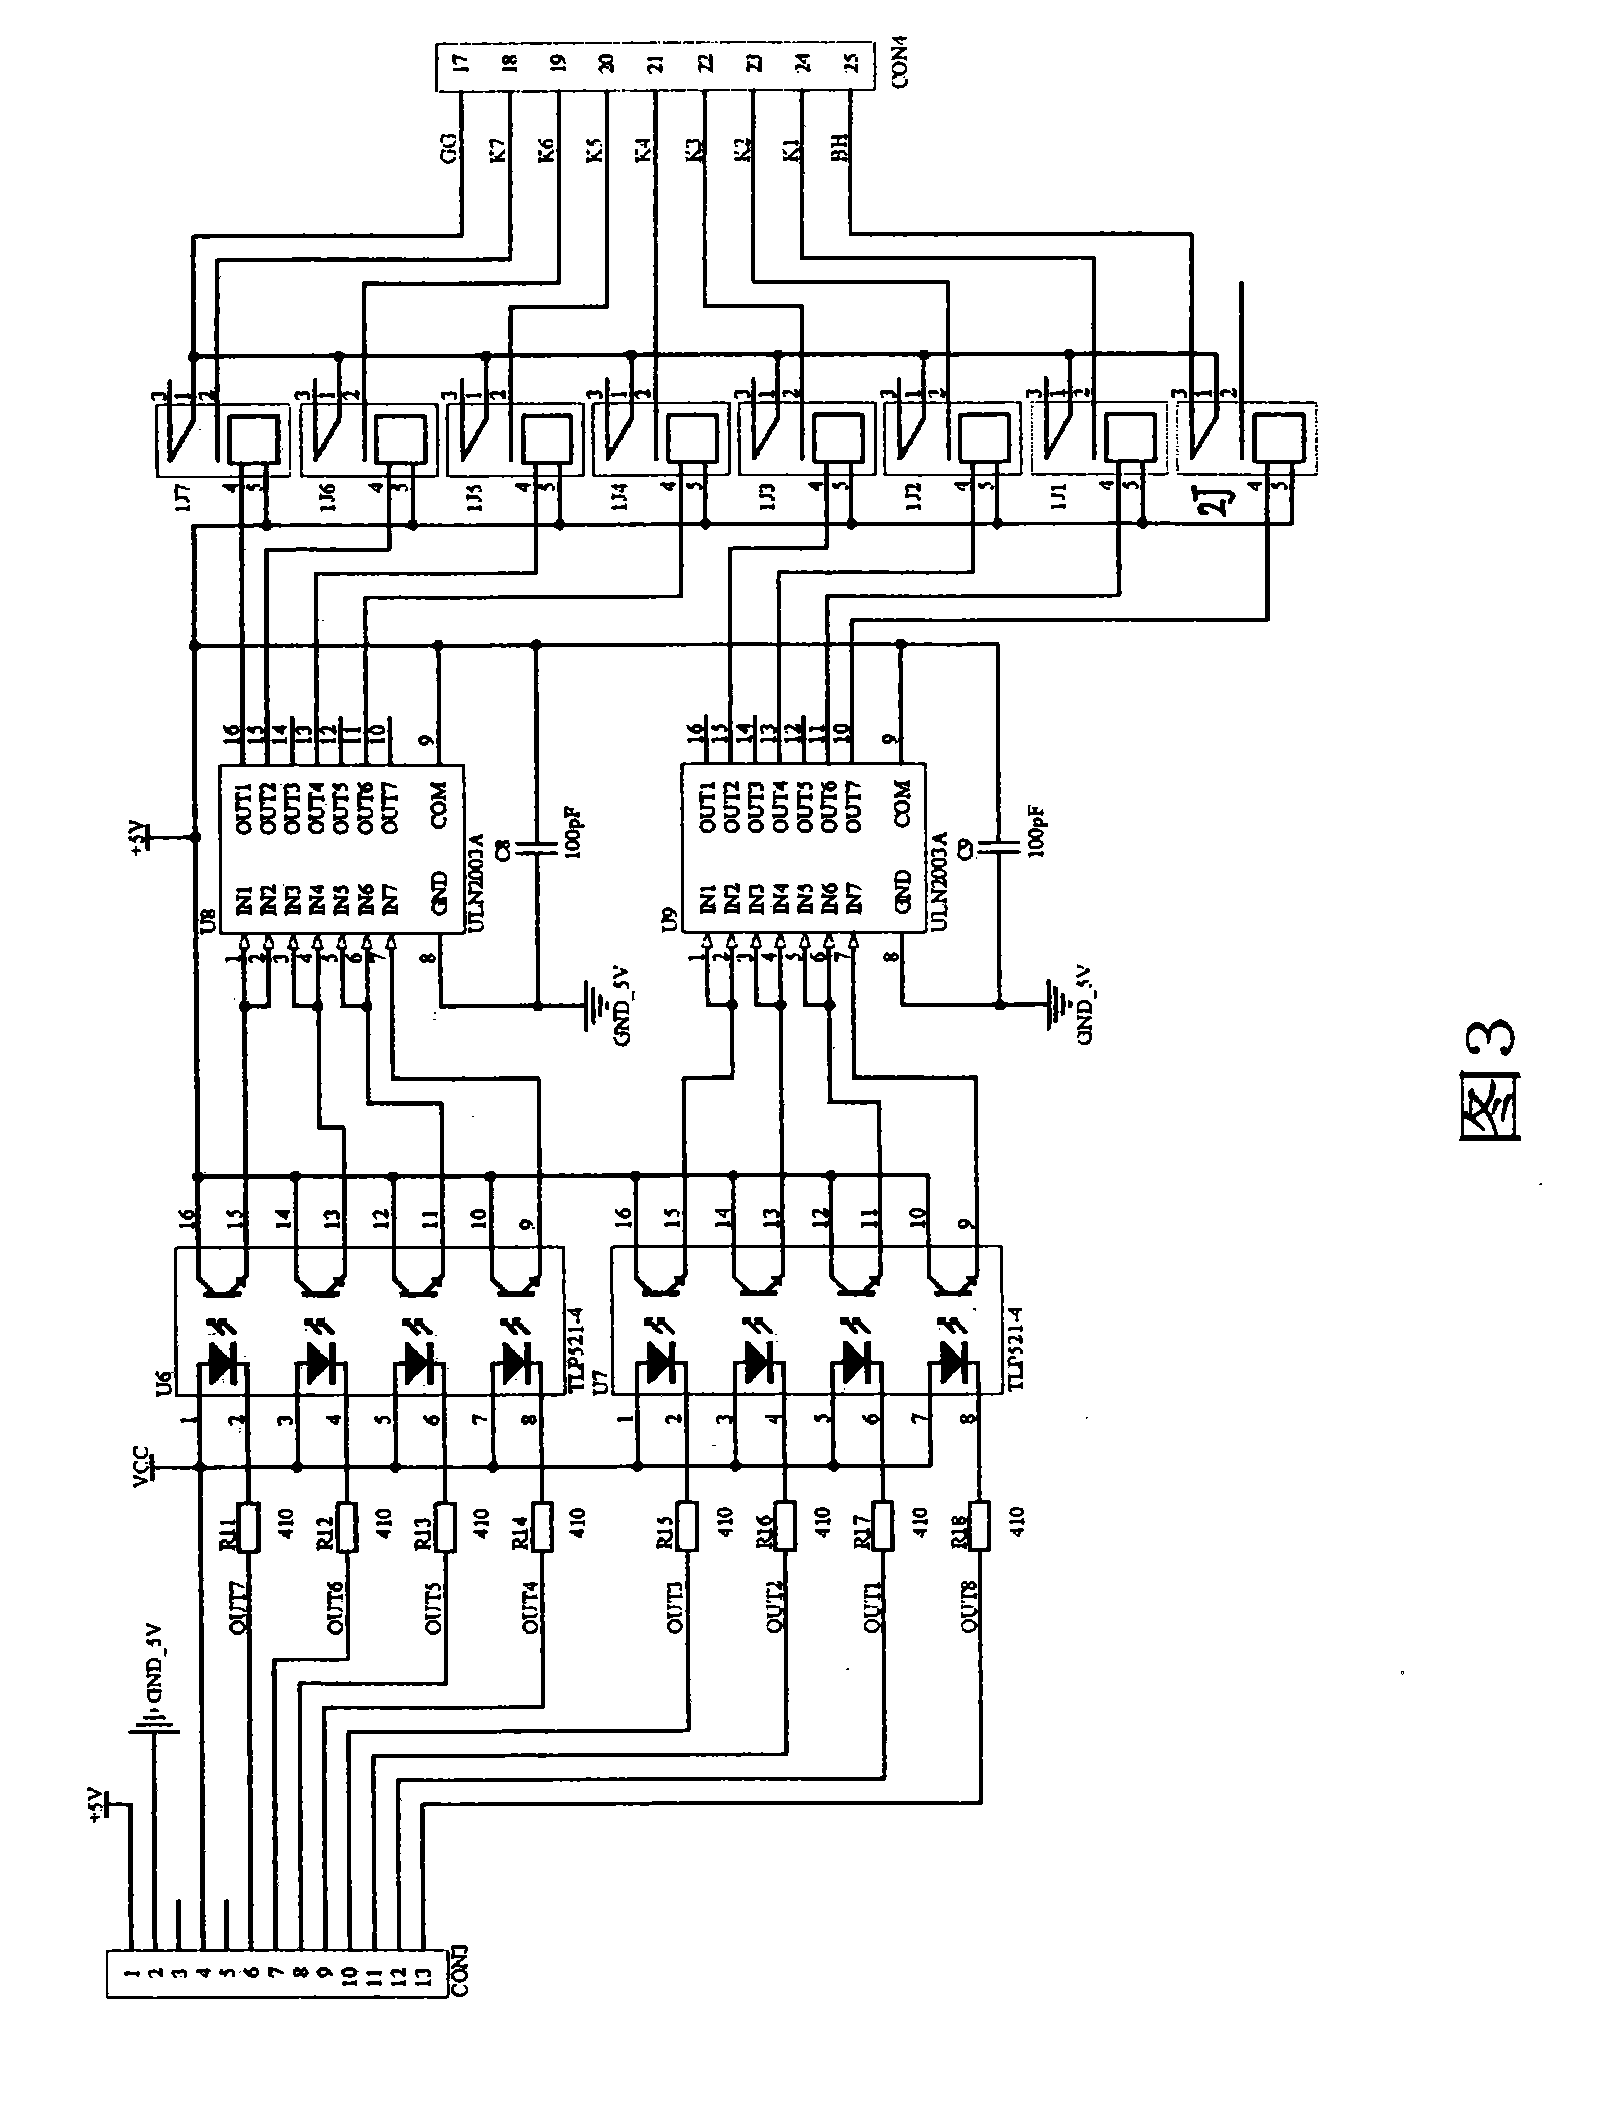 Full-automatic alternating current voltage compensator